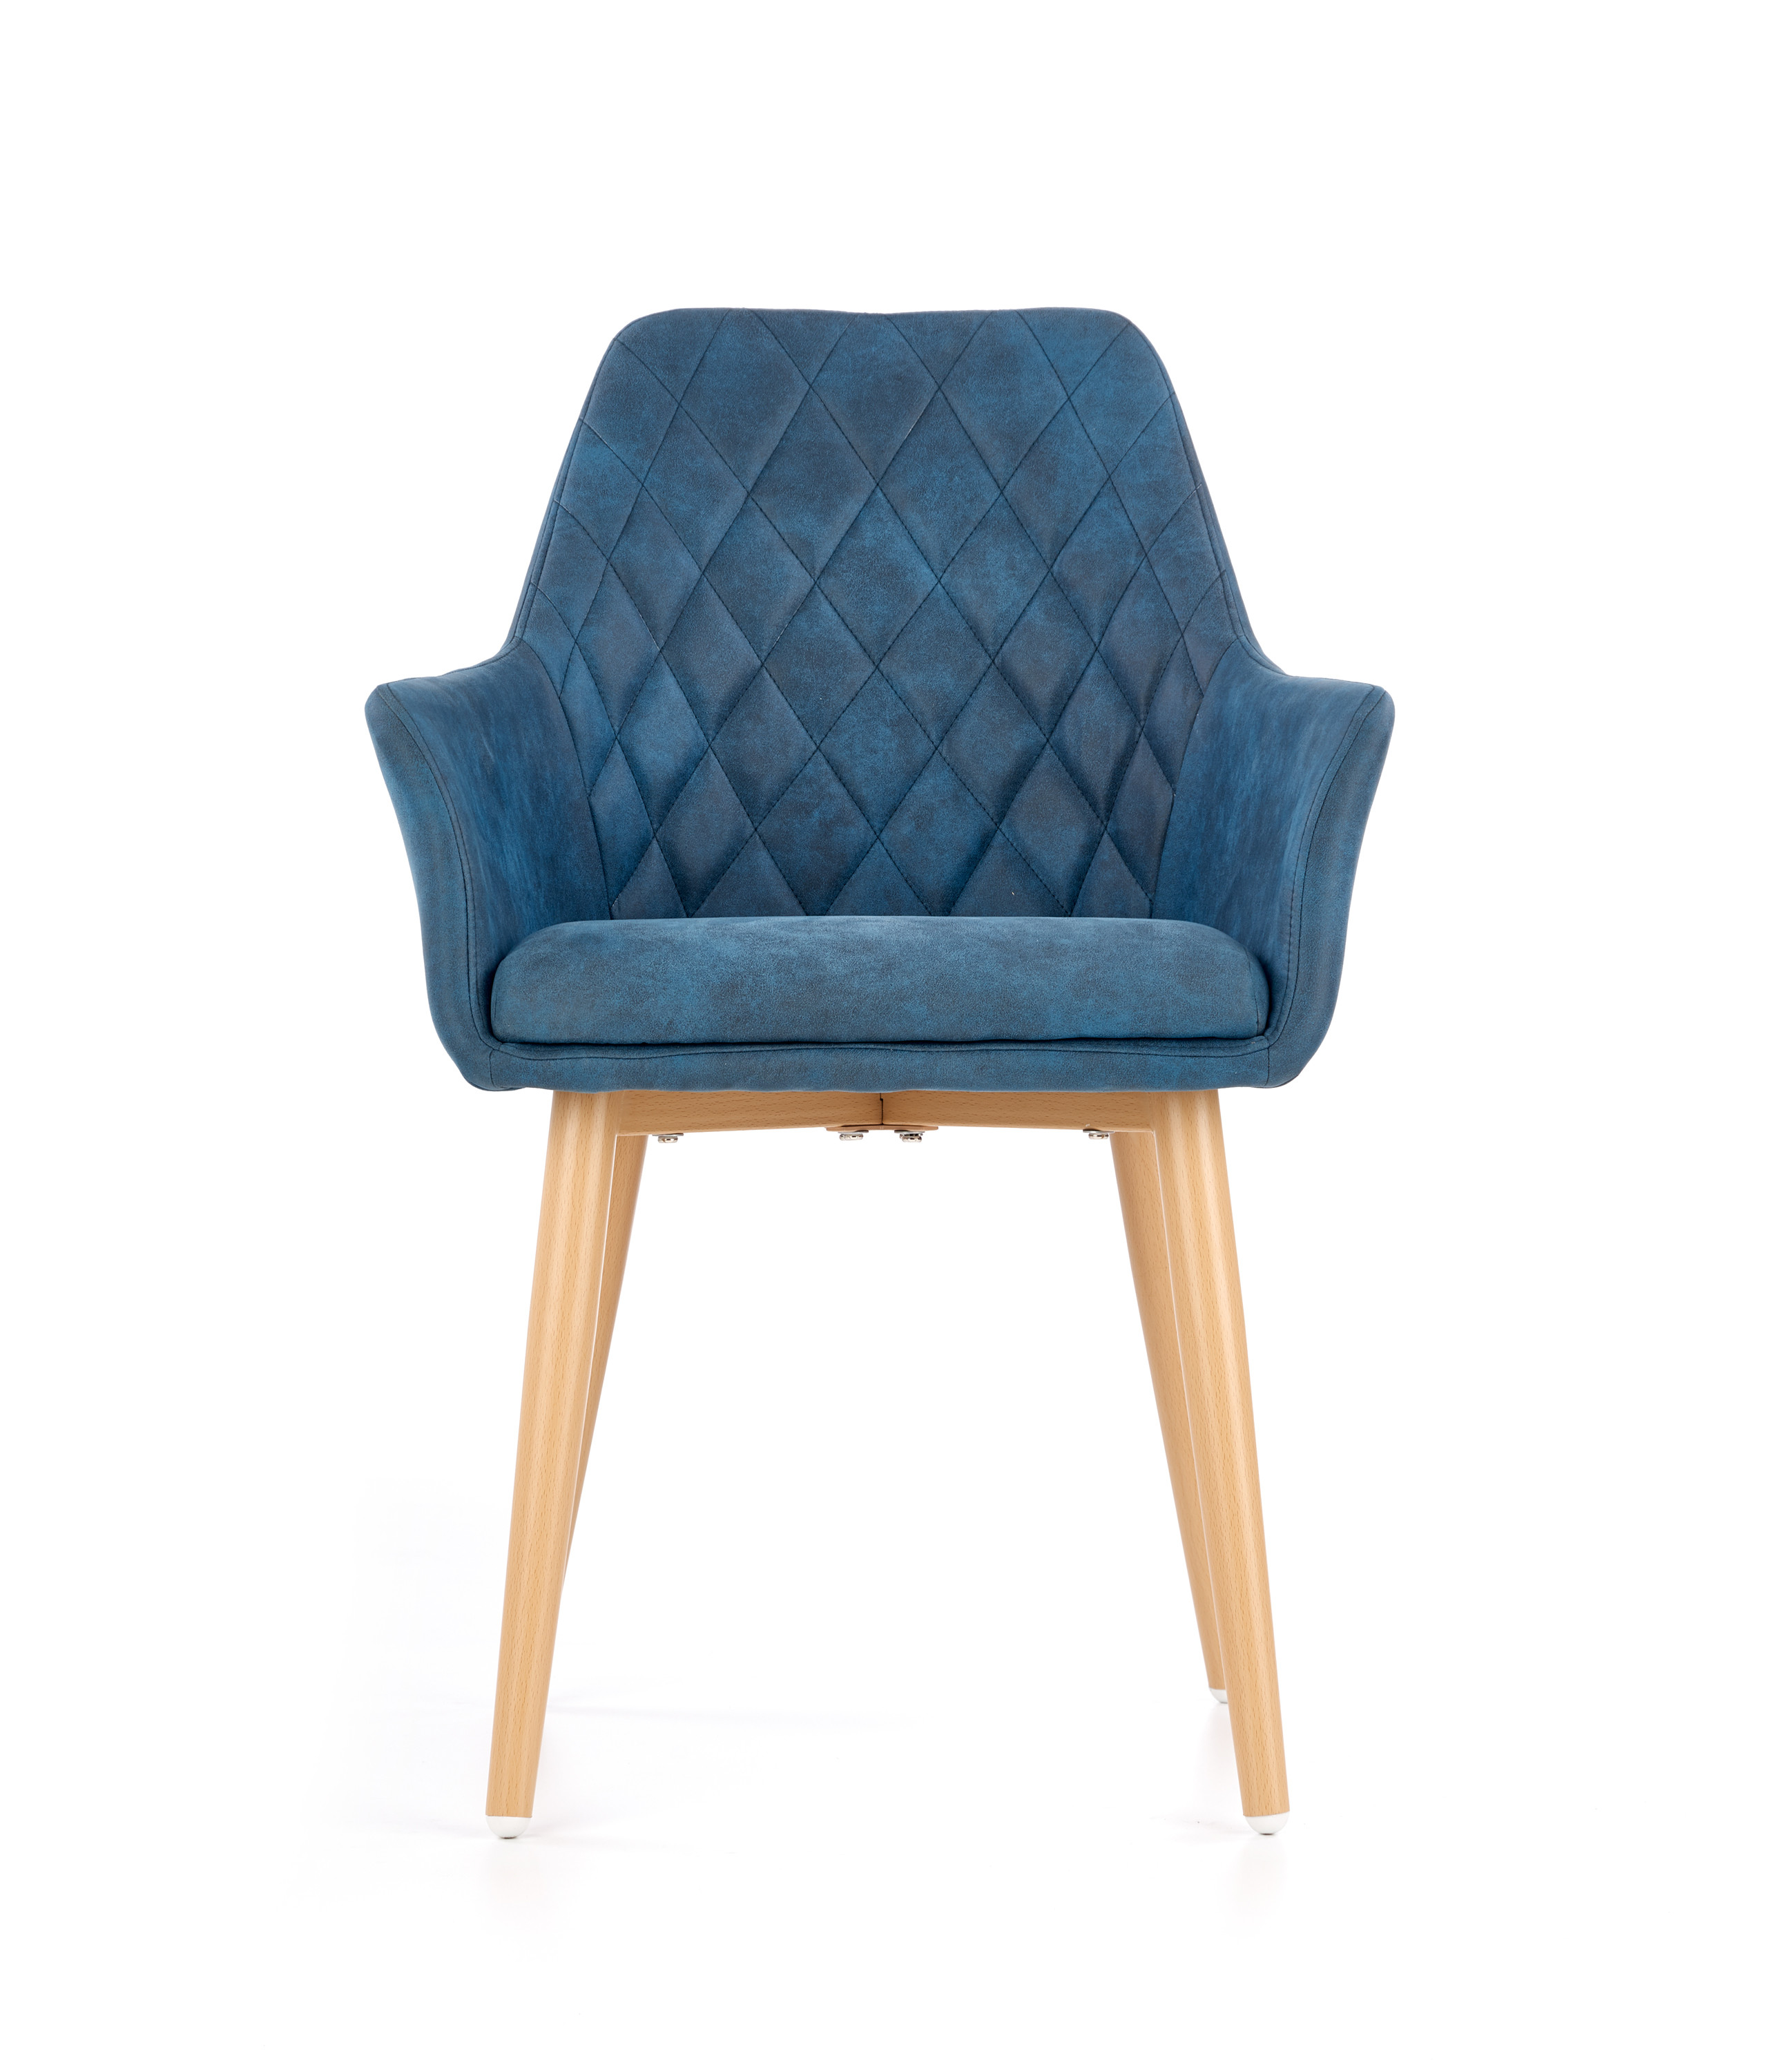 Jedálenská stolička modrá ekokoža